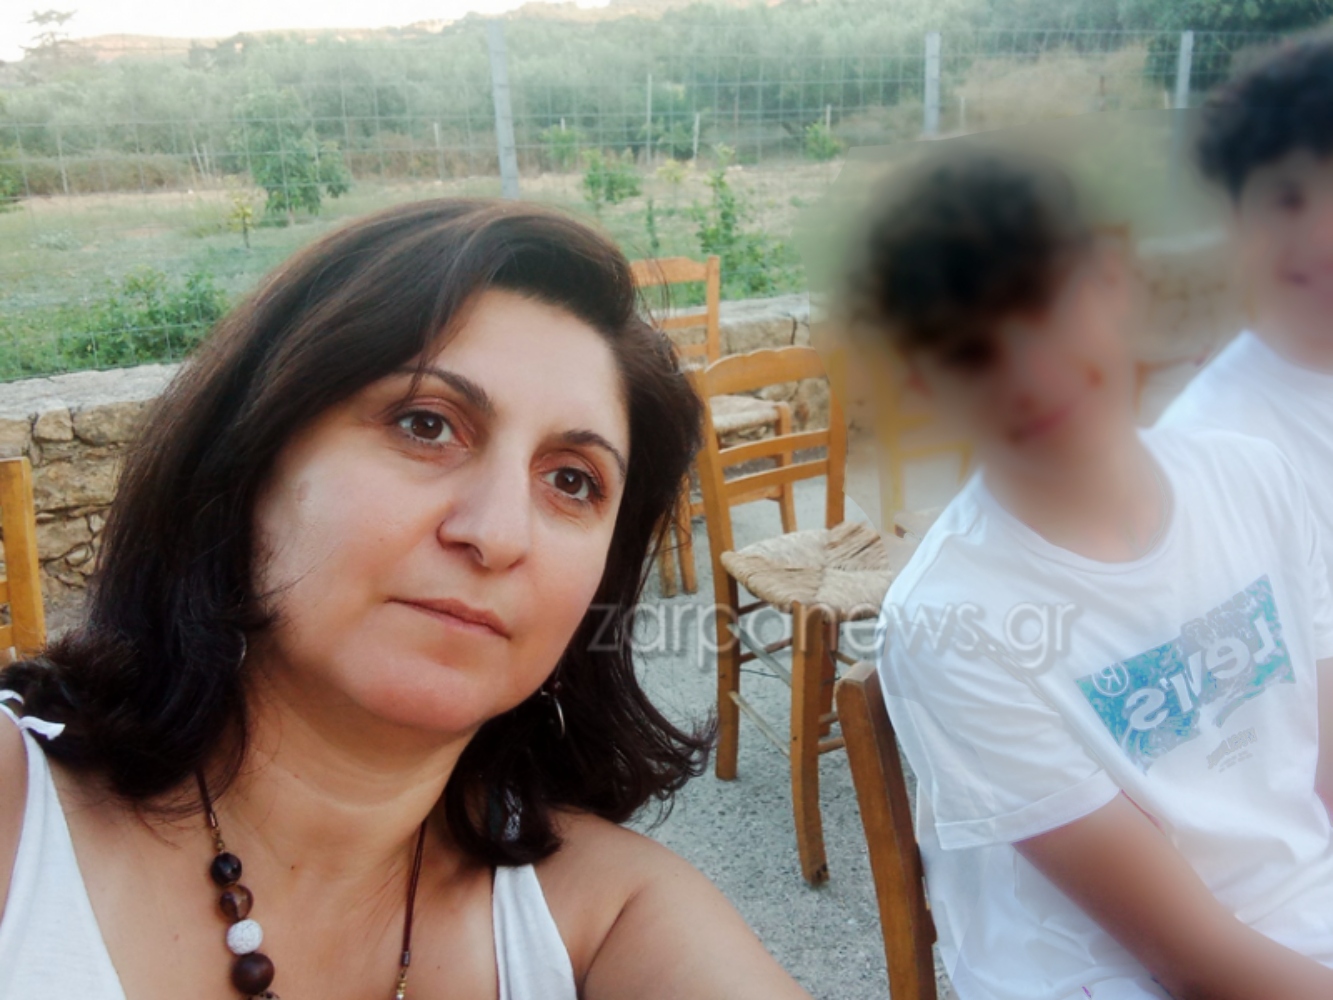 Χανιά: Μητέρα πέτυχε στις Πανελλήνιες και εμπνέει με την επιμονή της